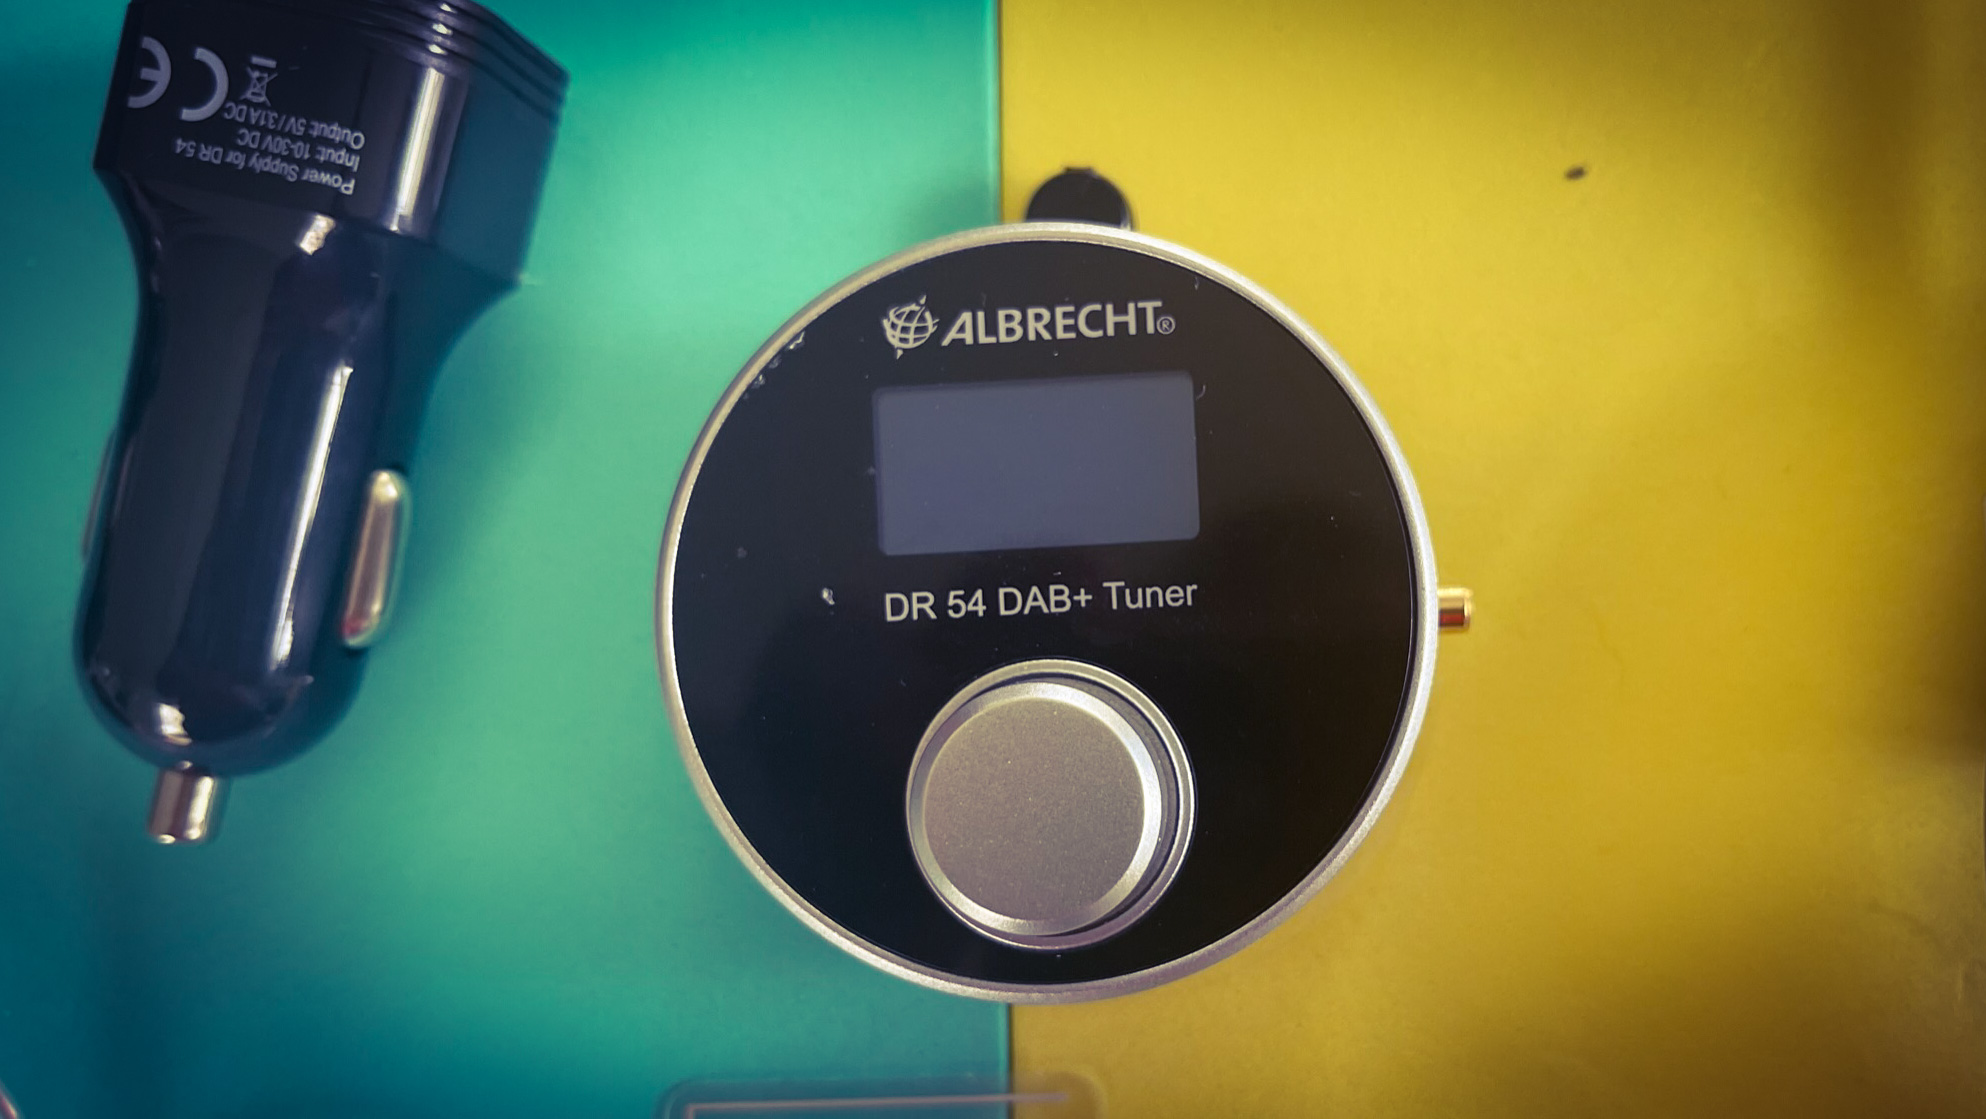 DAB-Adapter Auvisio FMX-680 im Test: Digitalradio & Bluetooth im Auto  nachrüsten